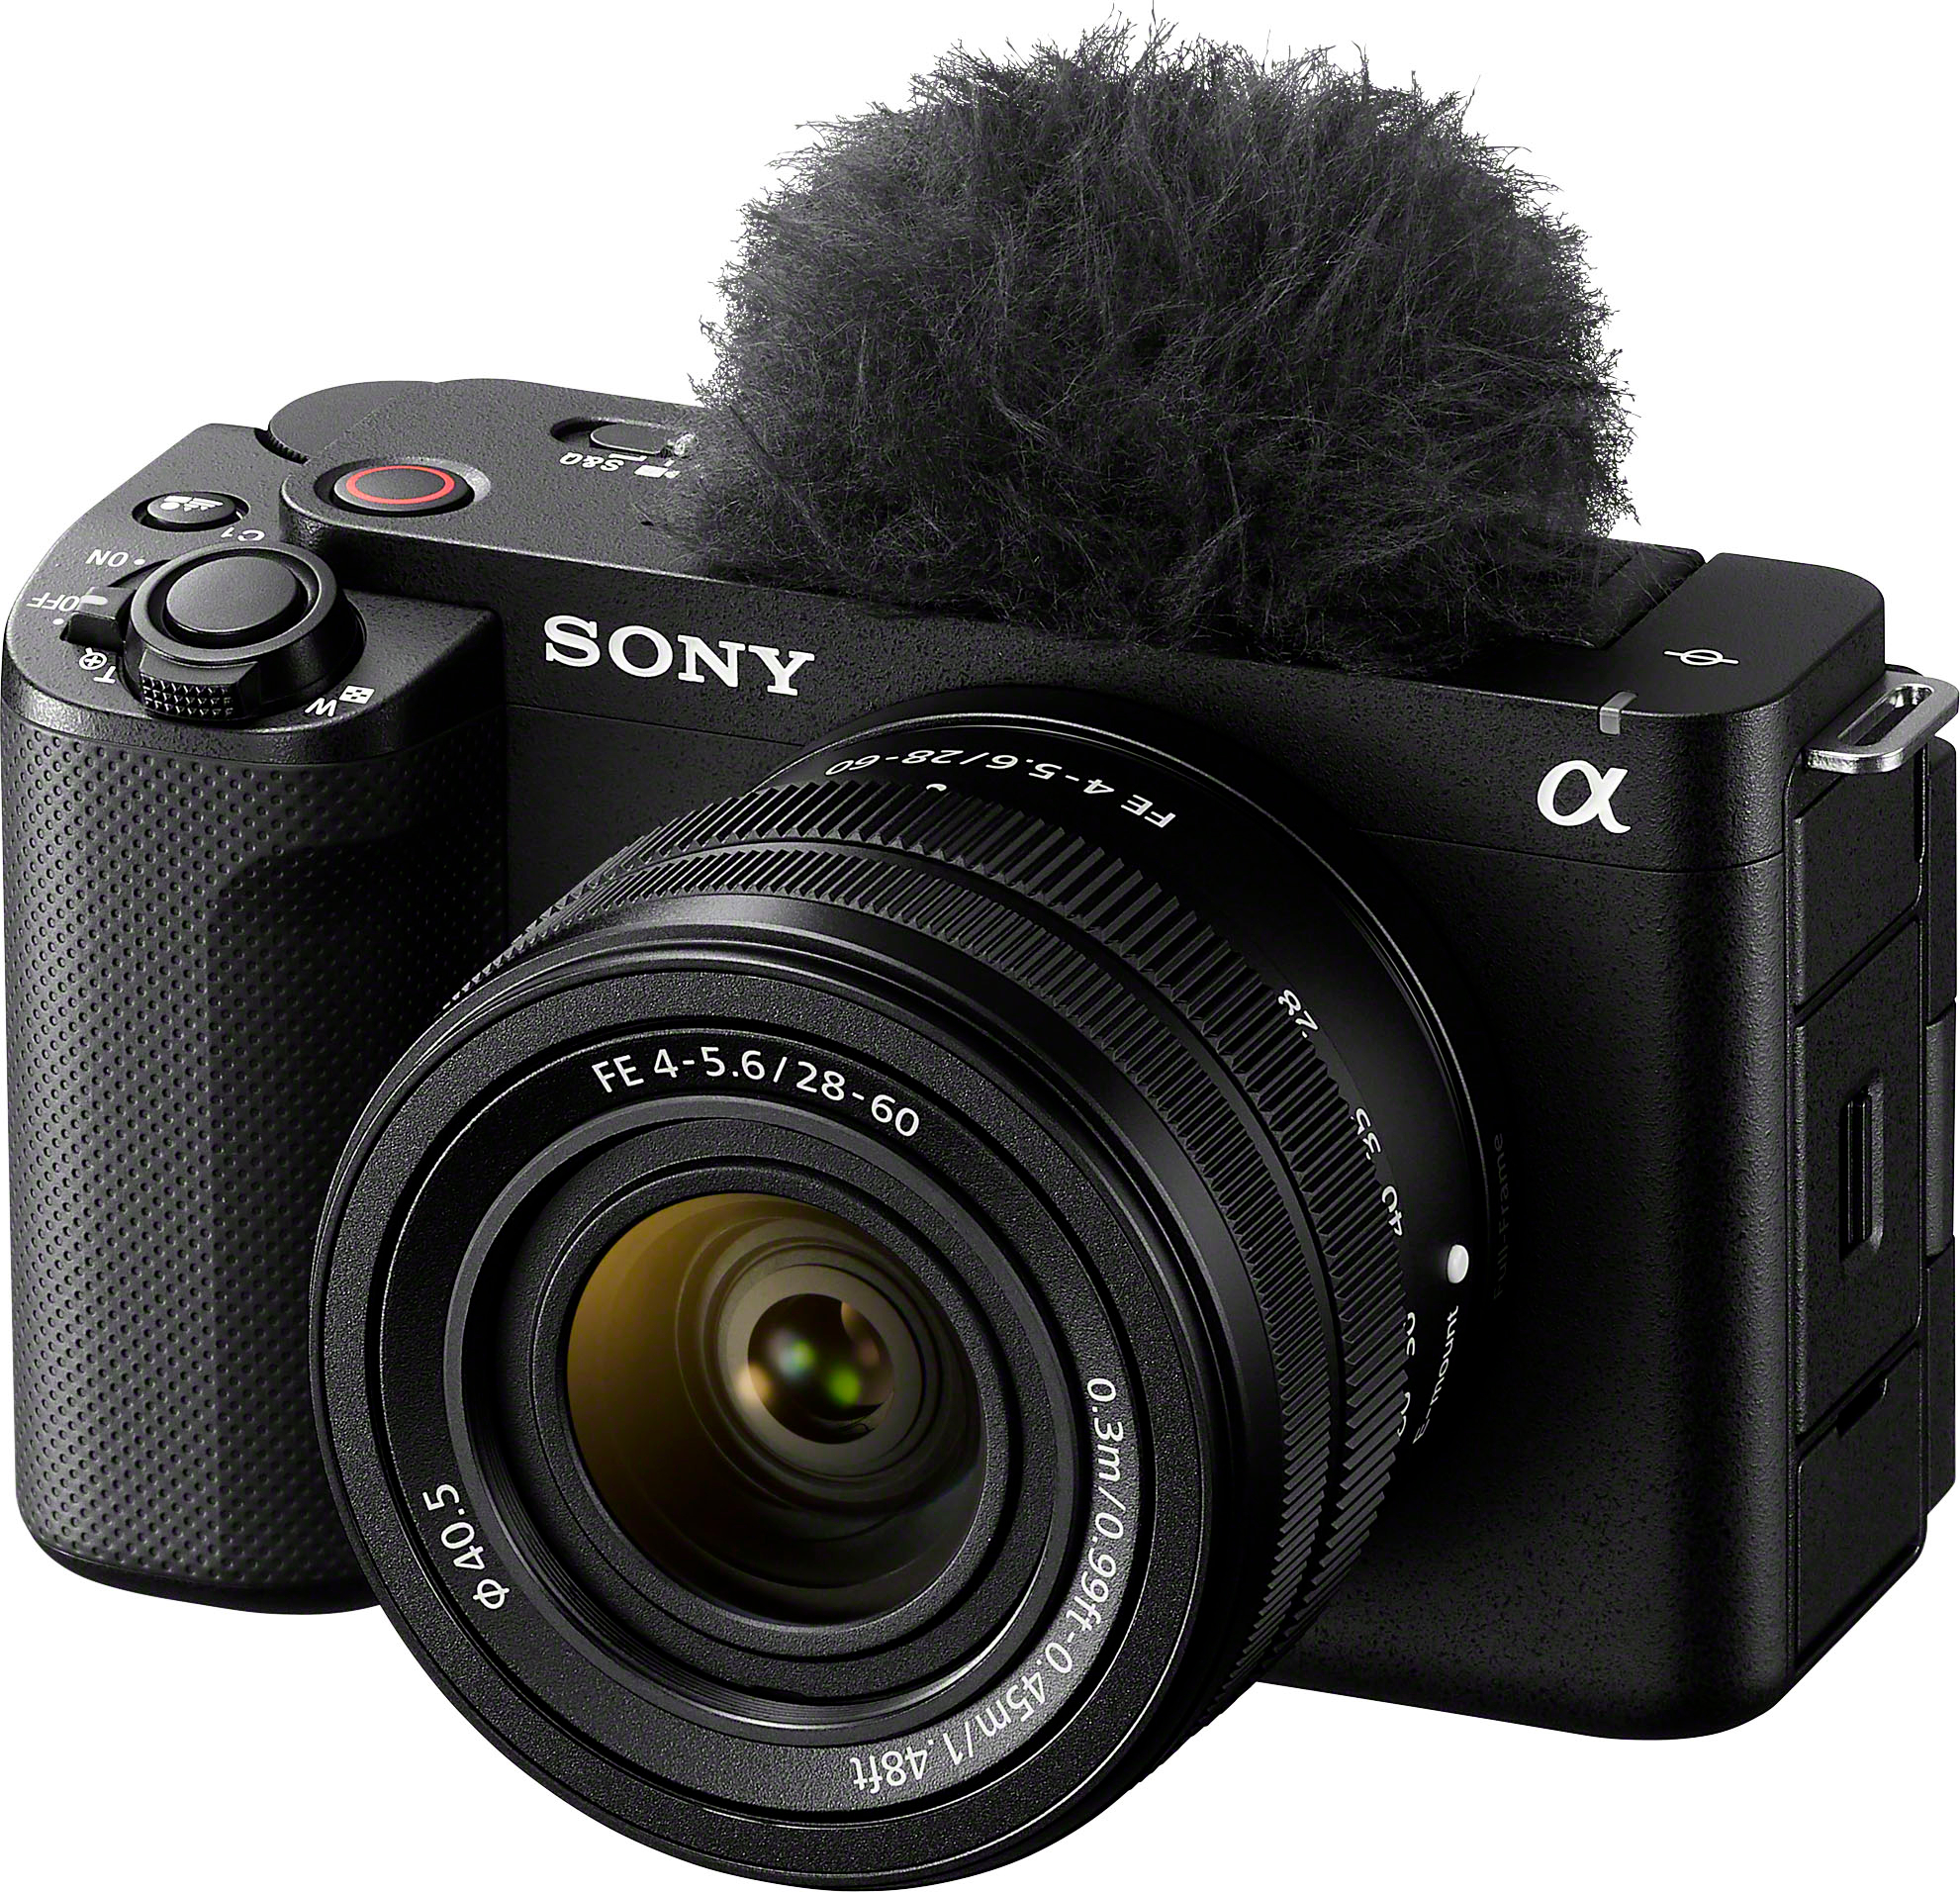 Angle View: Sony - Alpha ZV-E1 Full-frame Vlog Mirrorless Lens Camera Kit with 28-60mm Lens - Black